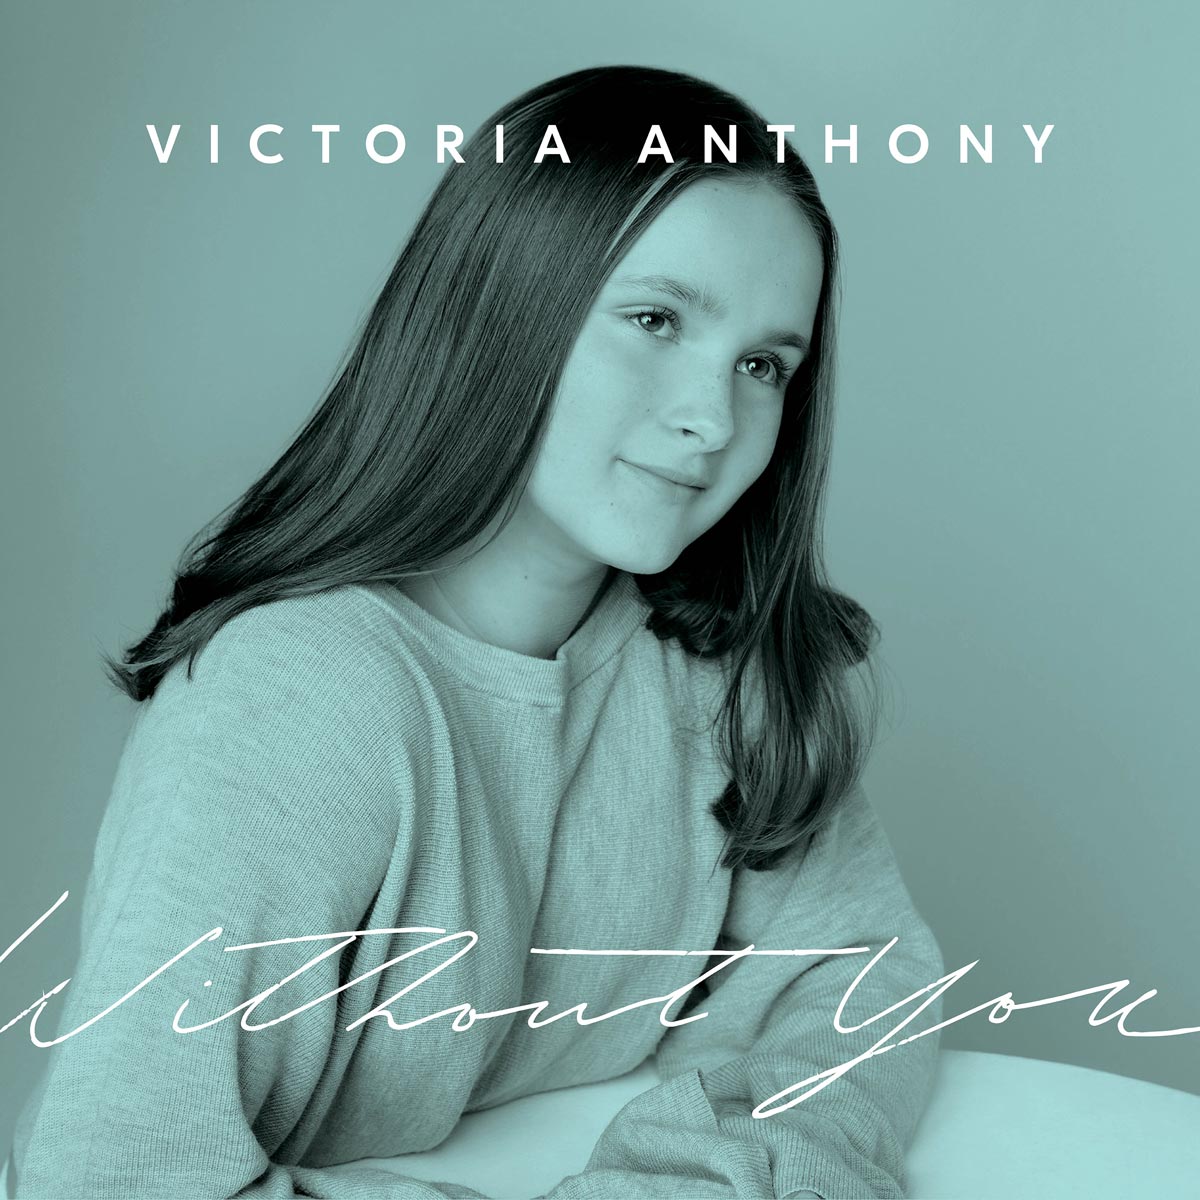 VICTORIA ANTHONY SINGLE